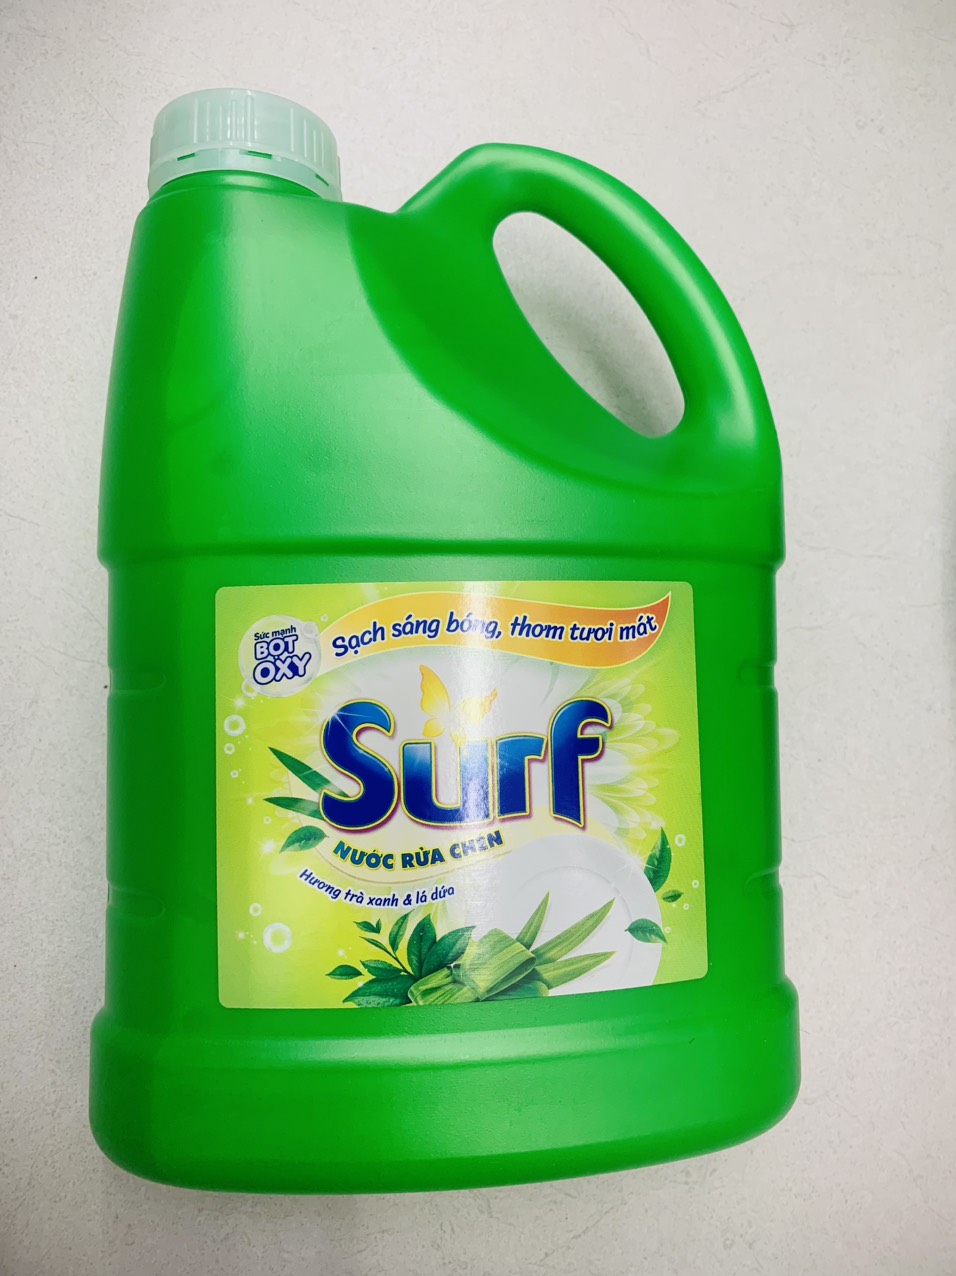 Nước rửa chén Surf trà xanh và lá dứa can 1.4kg